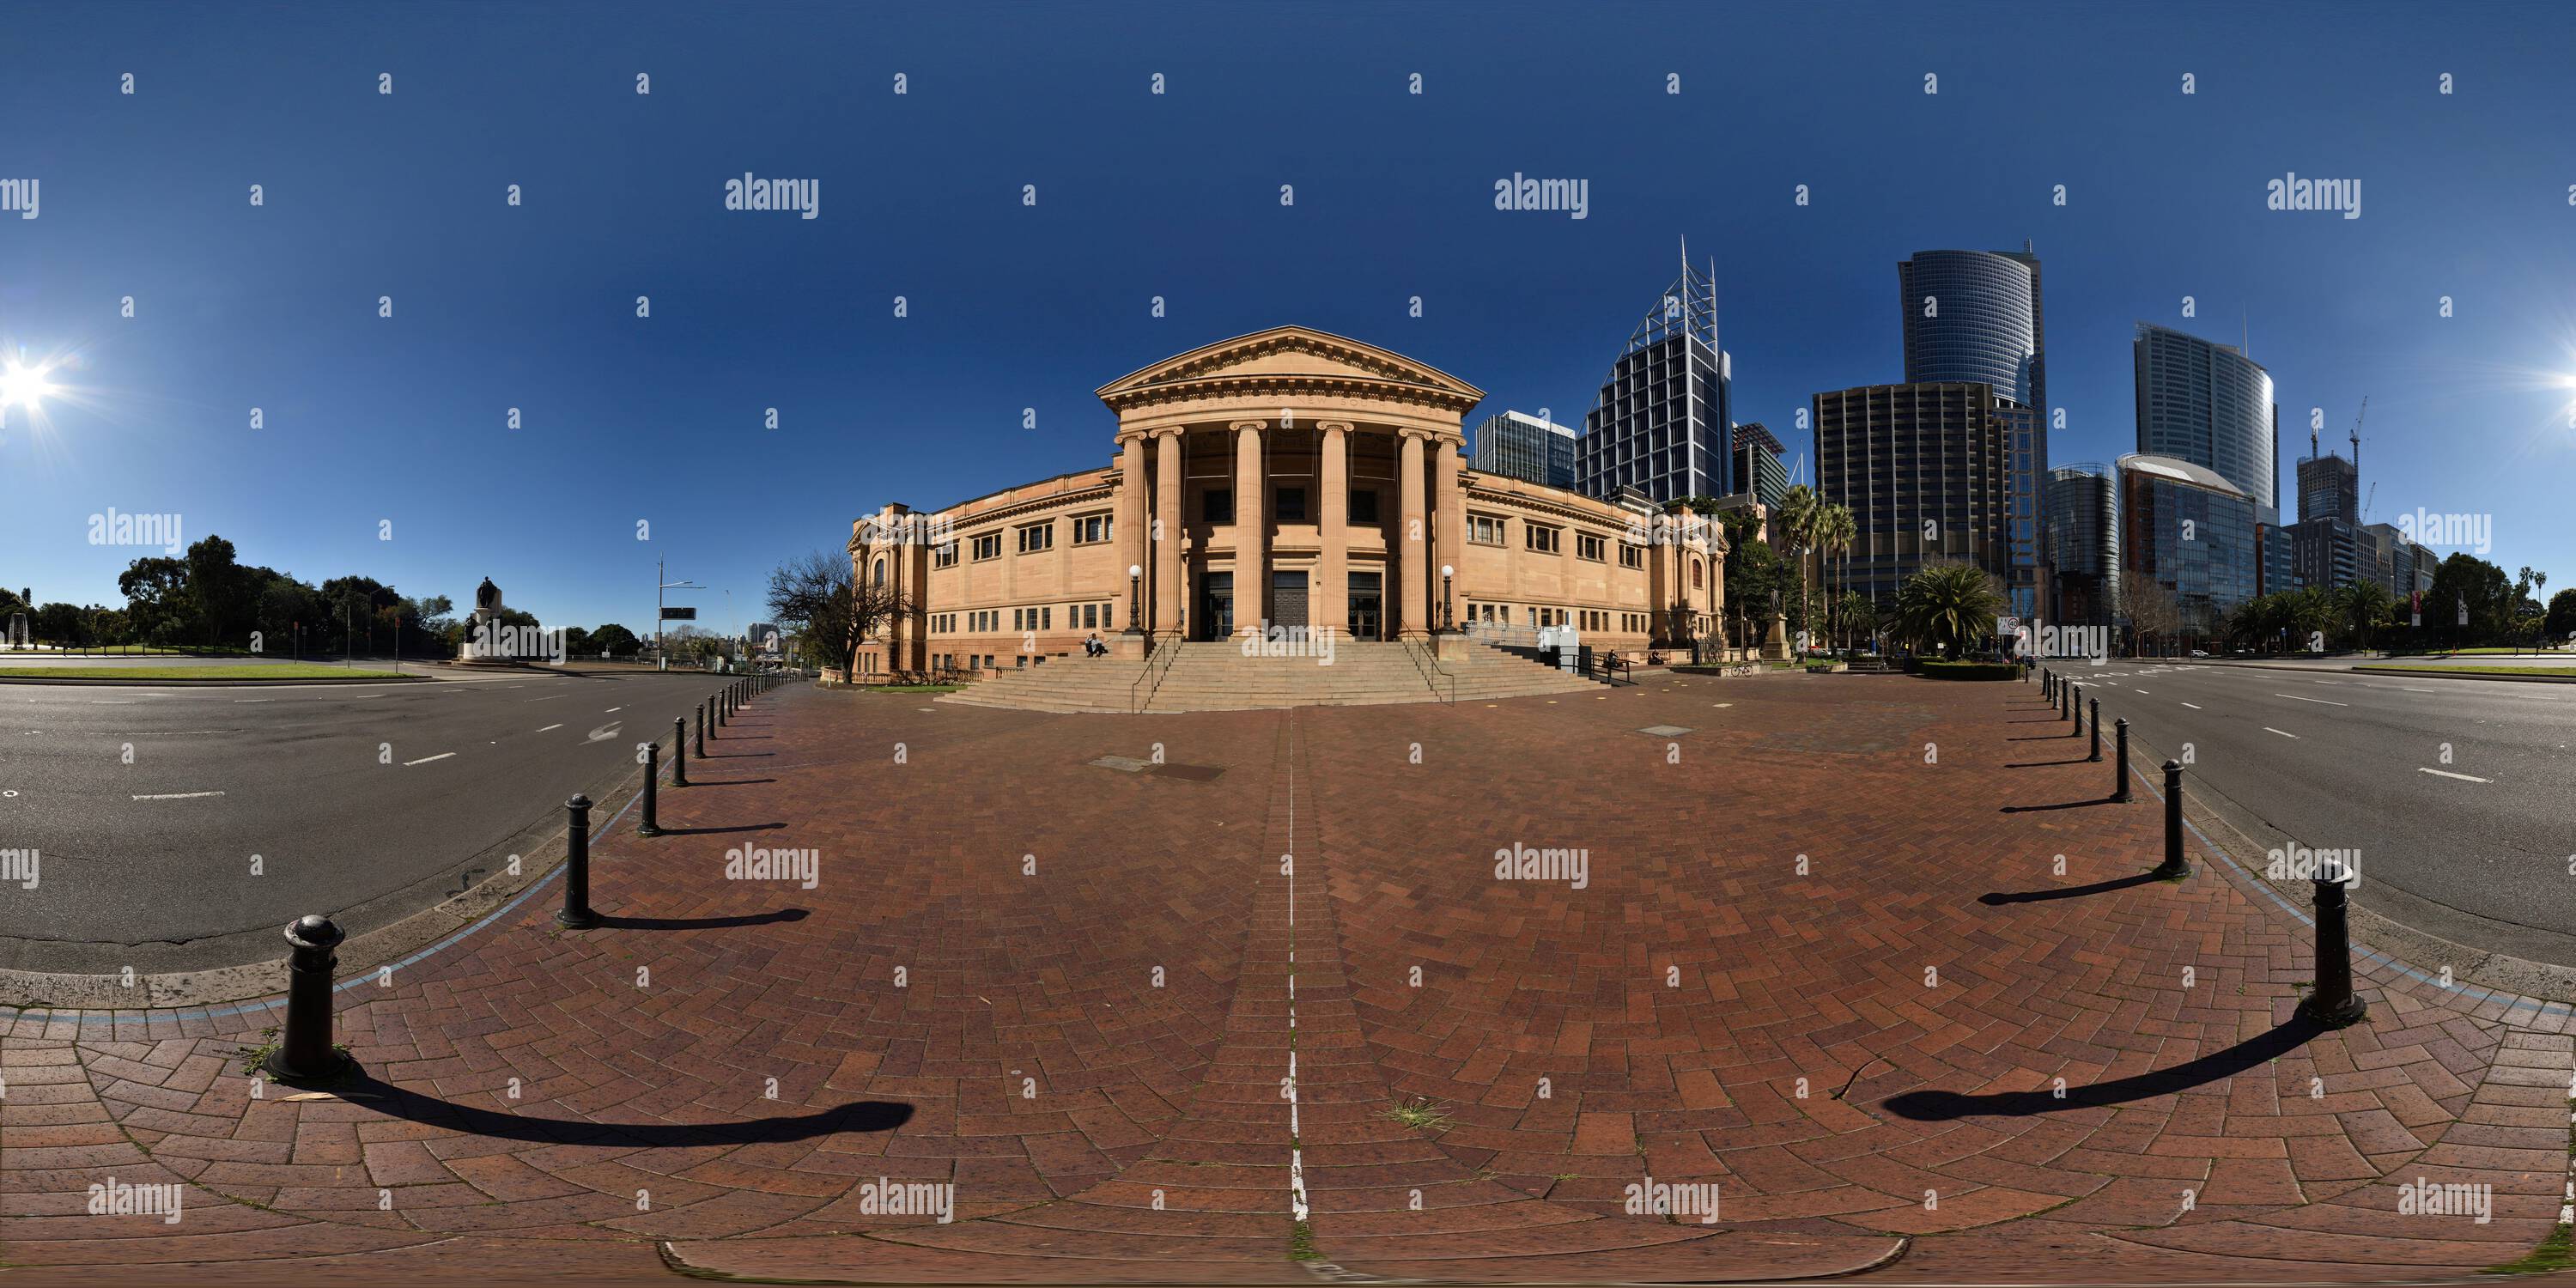 Visualizzazione panoramica a 360 gradi di Grande entrata della Biblioteca di Stato del nuovo Galles del Sud, il Mitchell Building, architettura classica, a Sydney in Australia